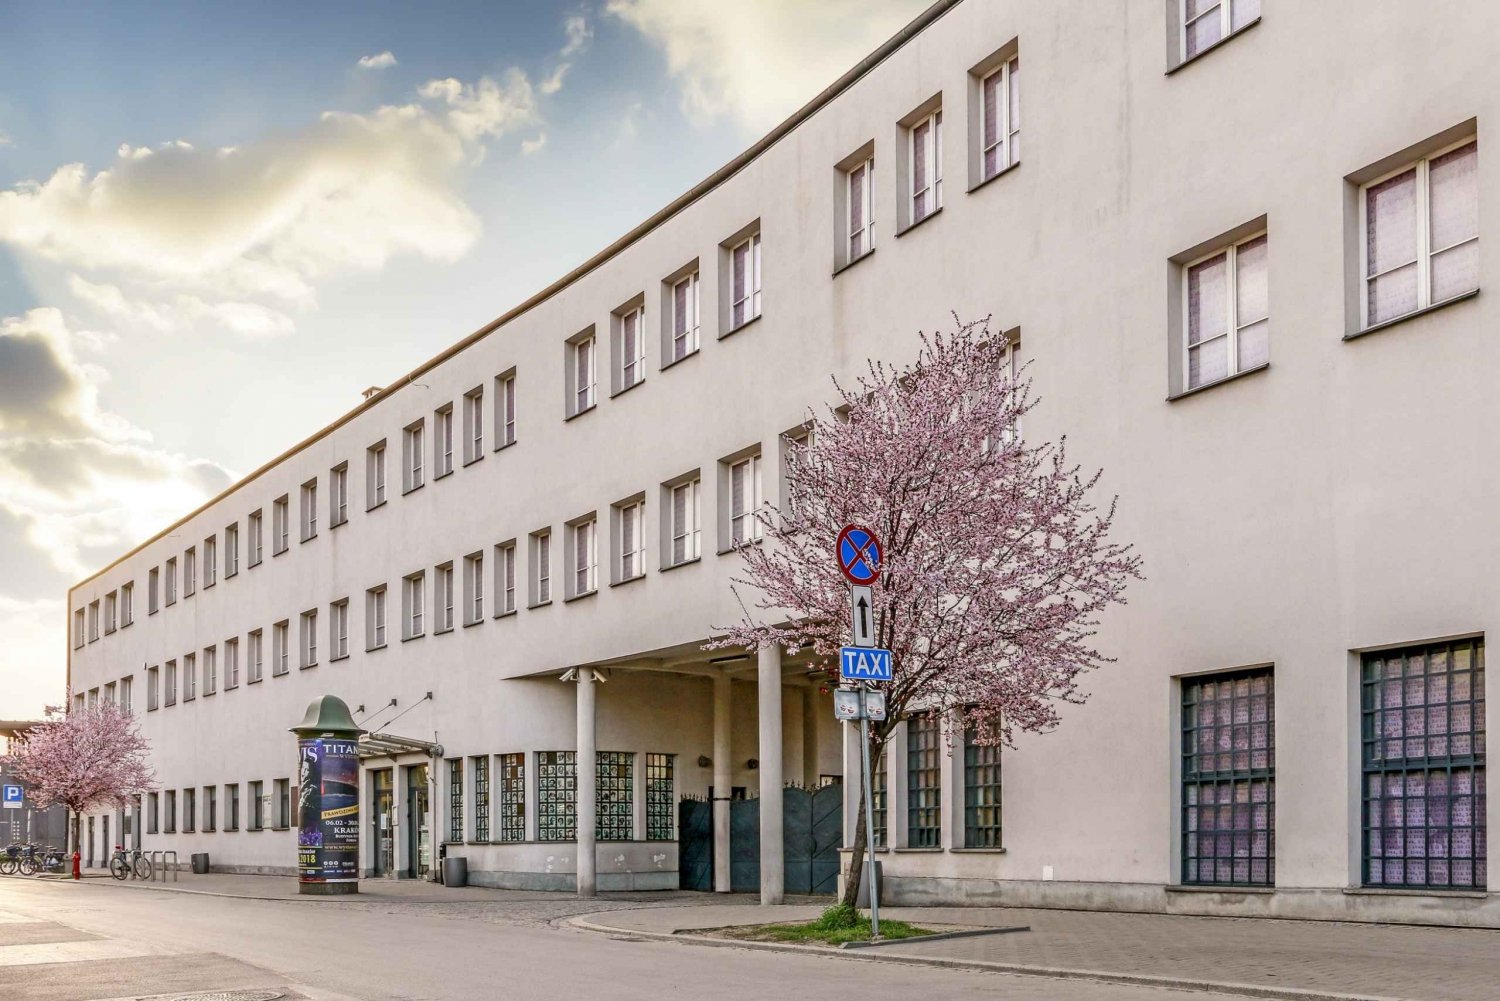 Cracovia: Visita y Entrada a la Fábrica de Oskar Schindler